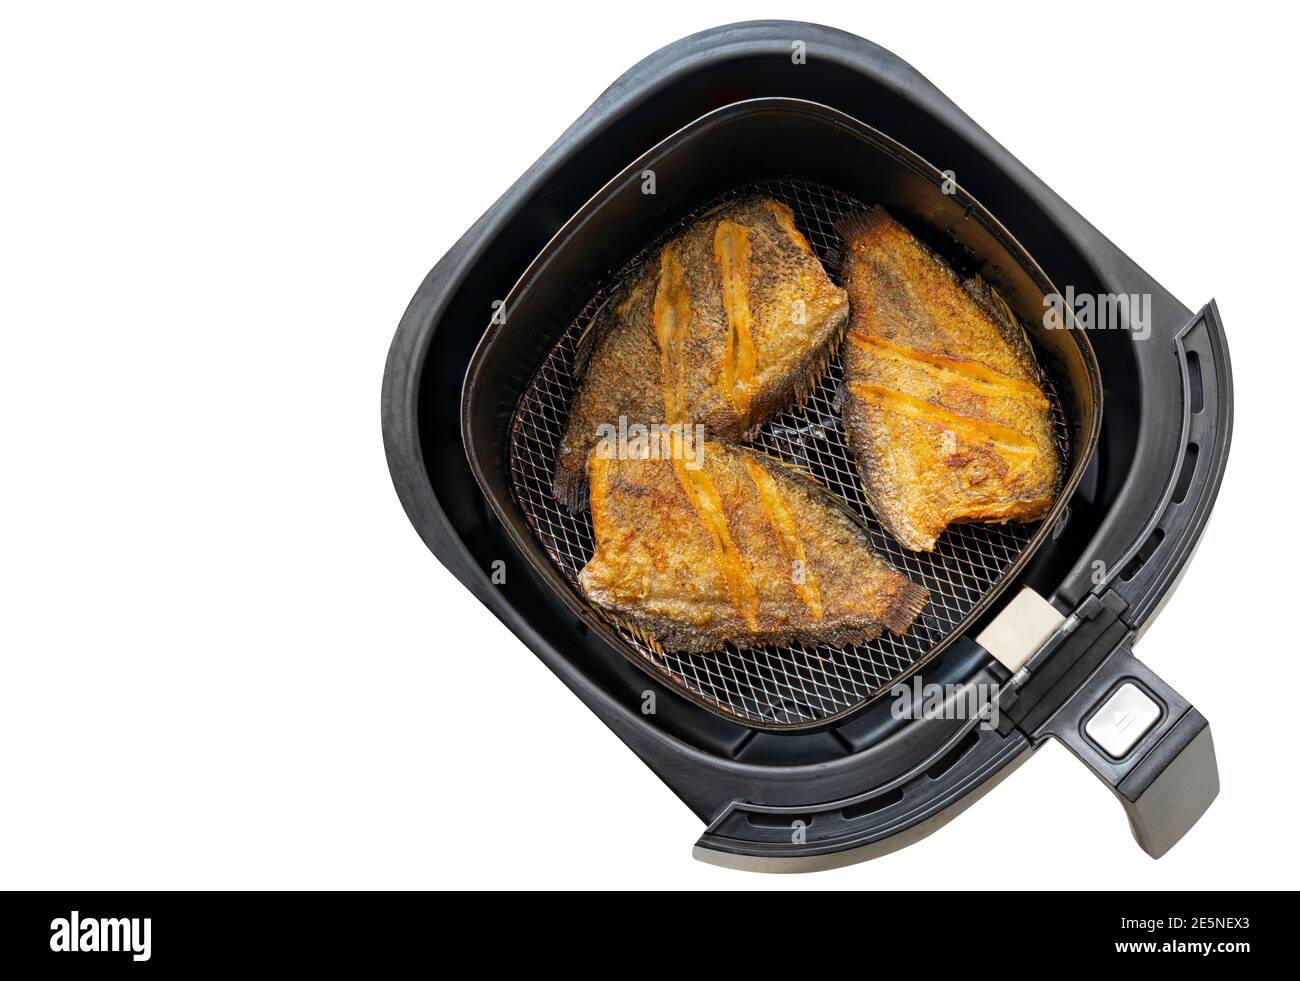 Frittierter Fisch in Schale mit Heißluft-Fritteuse oder ölfreier Fritteuse,  Draufsicht, isoliert auf weißem Hintergrund. Das Konzept für modernes und  gesundes Kochen Stockfotografie - Alamy